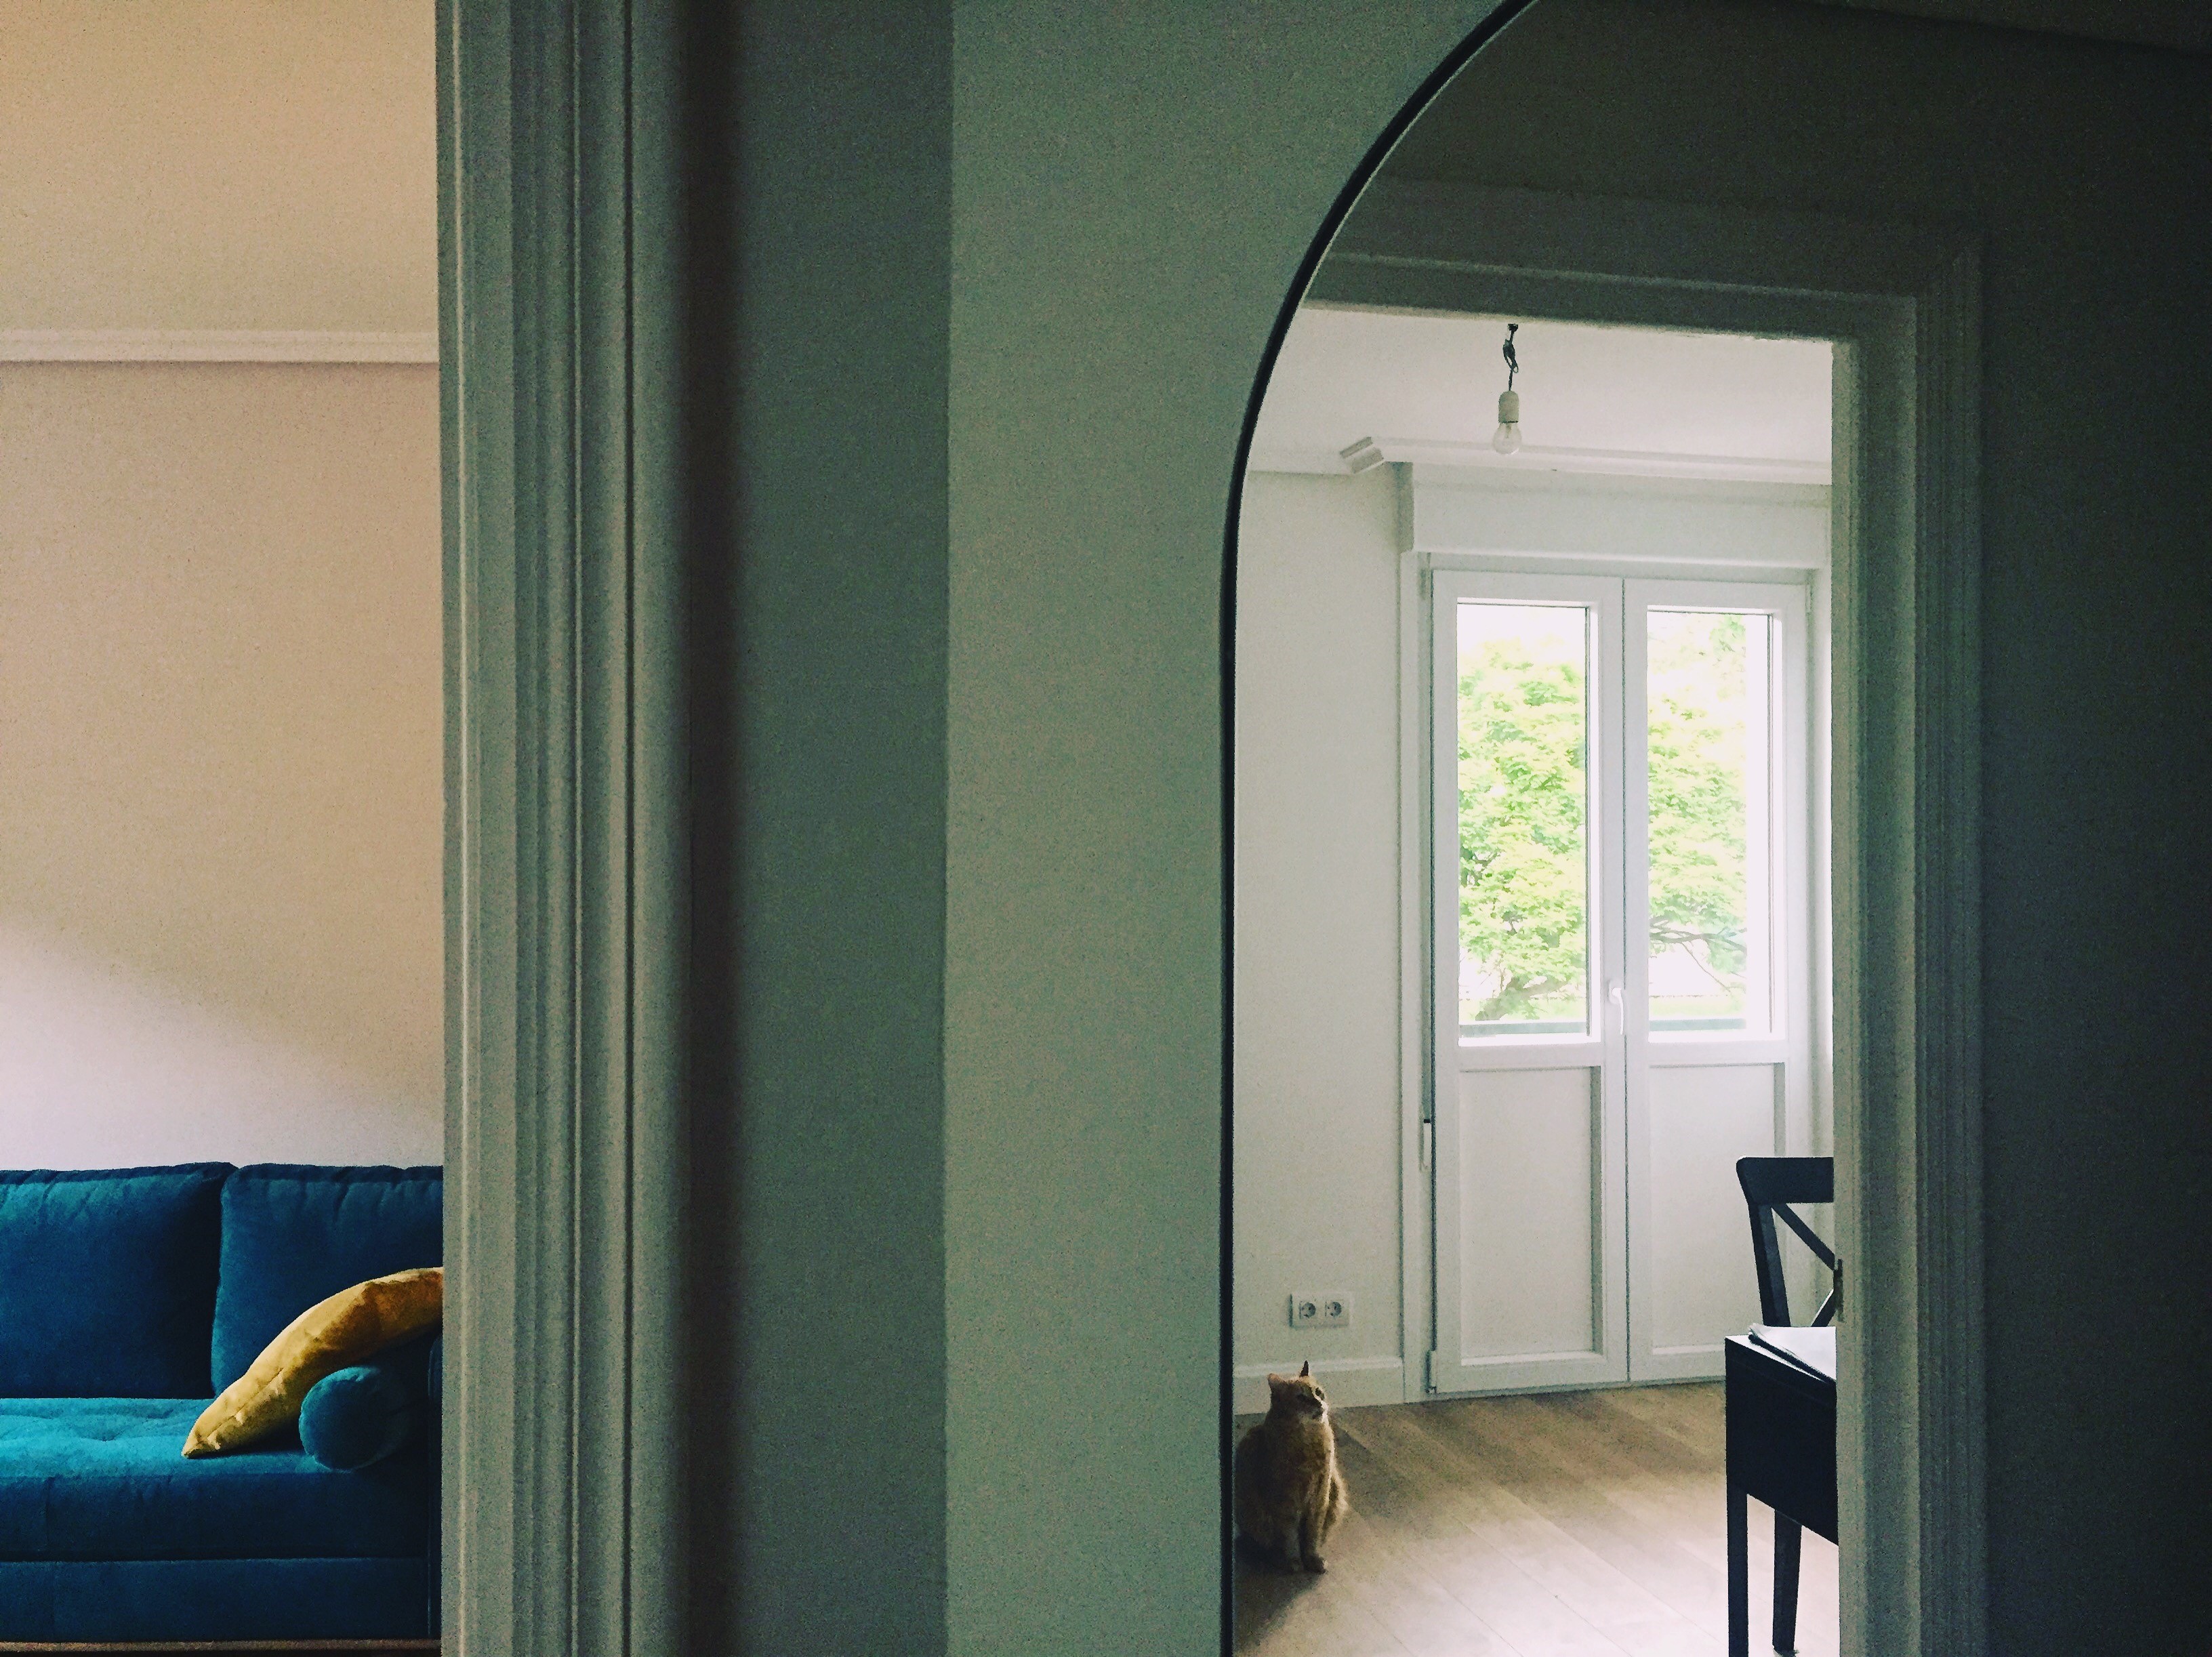 Vemos una habitación turquesa con un espejo ovalado en la parte derecha. El espejo refleja una sala blanca apenas amueblada con una silla negra, una bombilla colgando y una puerta acristalada también blanca que da a un balcón desde el que se entrevé un árbol. En una esquina del reflejo un gato marrón alza la mirada como con curiosidad. En el otro lado de la habitación se abre una puerta que deja entrever un sofá azul con un cojín amarillo recostado.